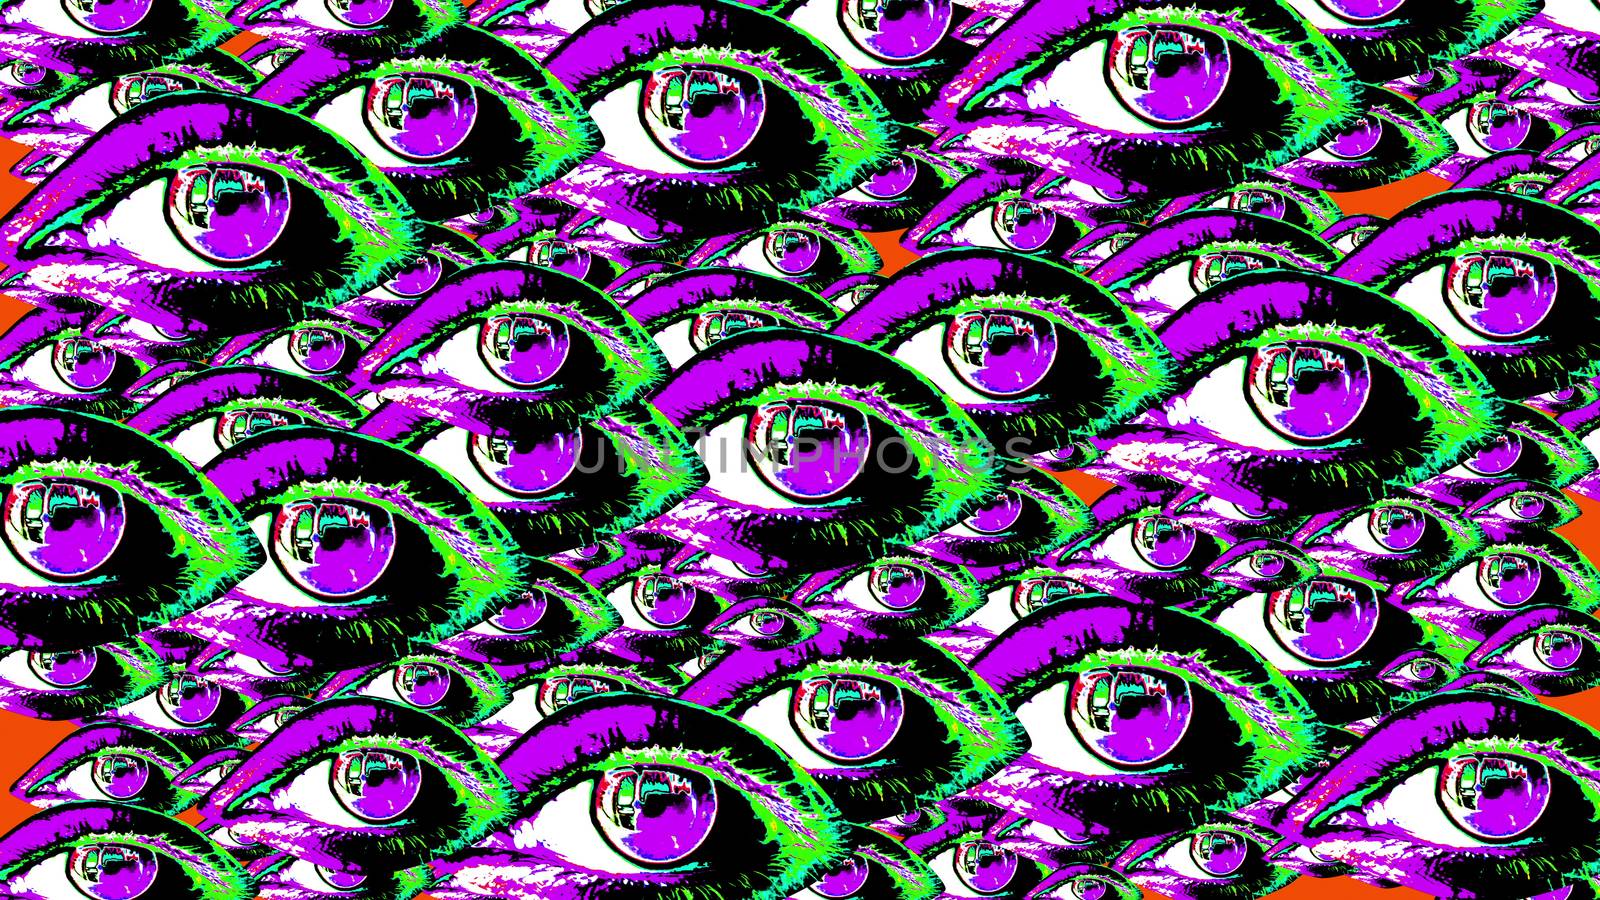 A pile of pop-art human eyes. by klss